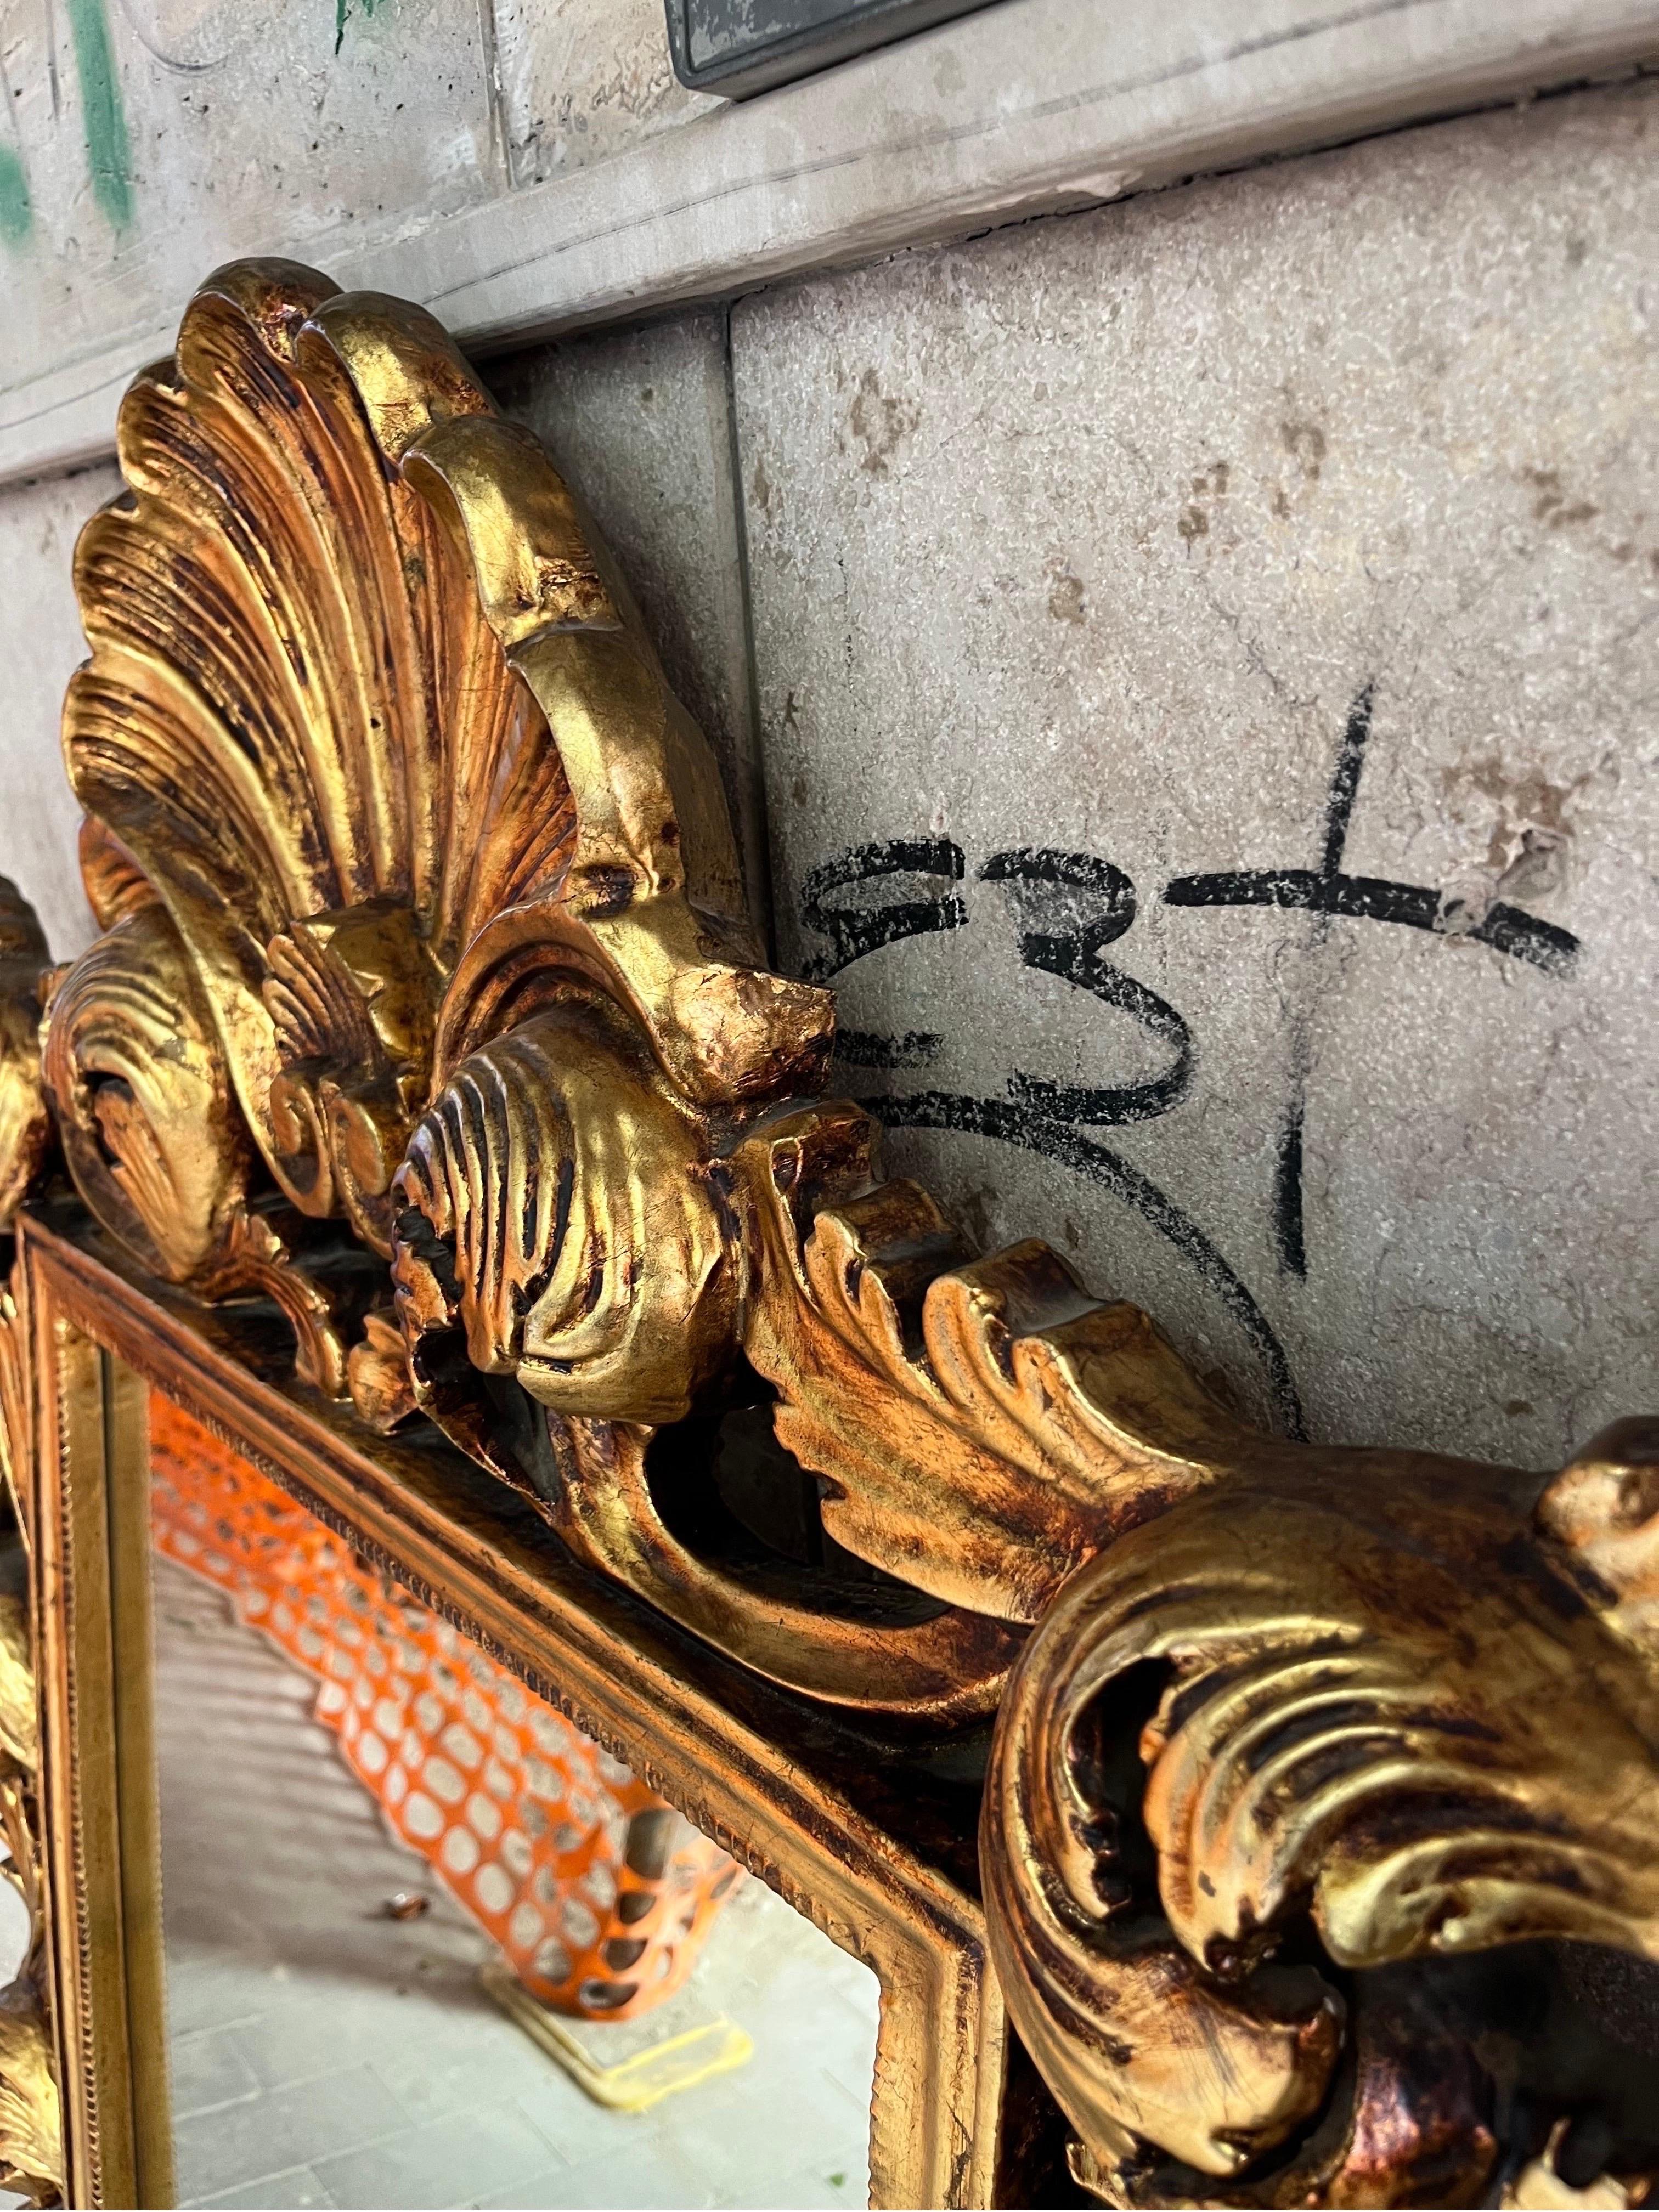 Specchiera Legno Decorata a mano in autentica foglia oro intagliata a mano 

Barocco Italiano del ‘900

Ideale per progetti di interni unici e raffinati

Integra e in perfetto stato conservativo 

Misure

Cm 120 x cm 90 x cm 5 